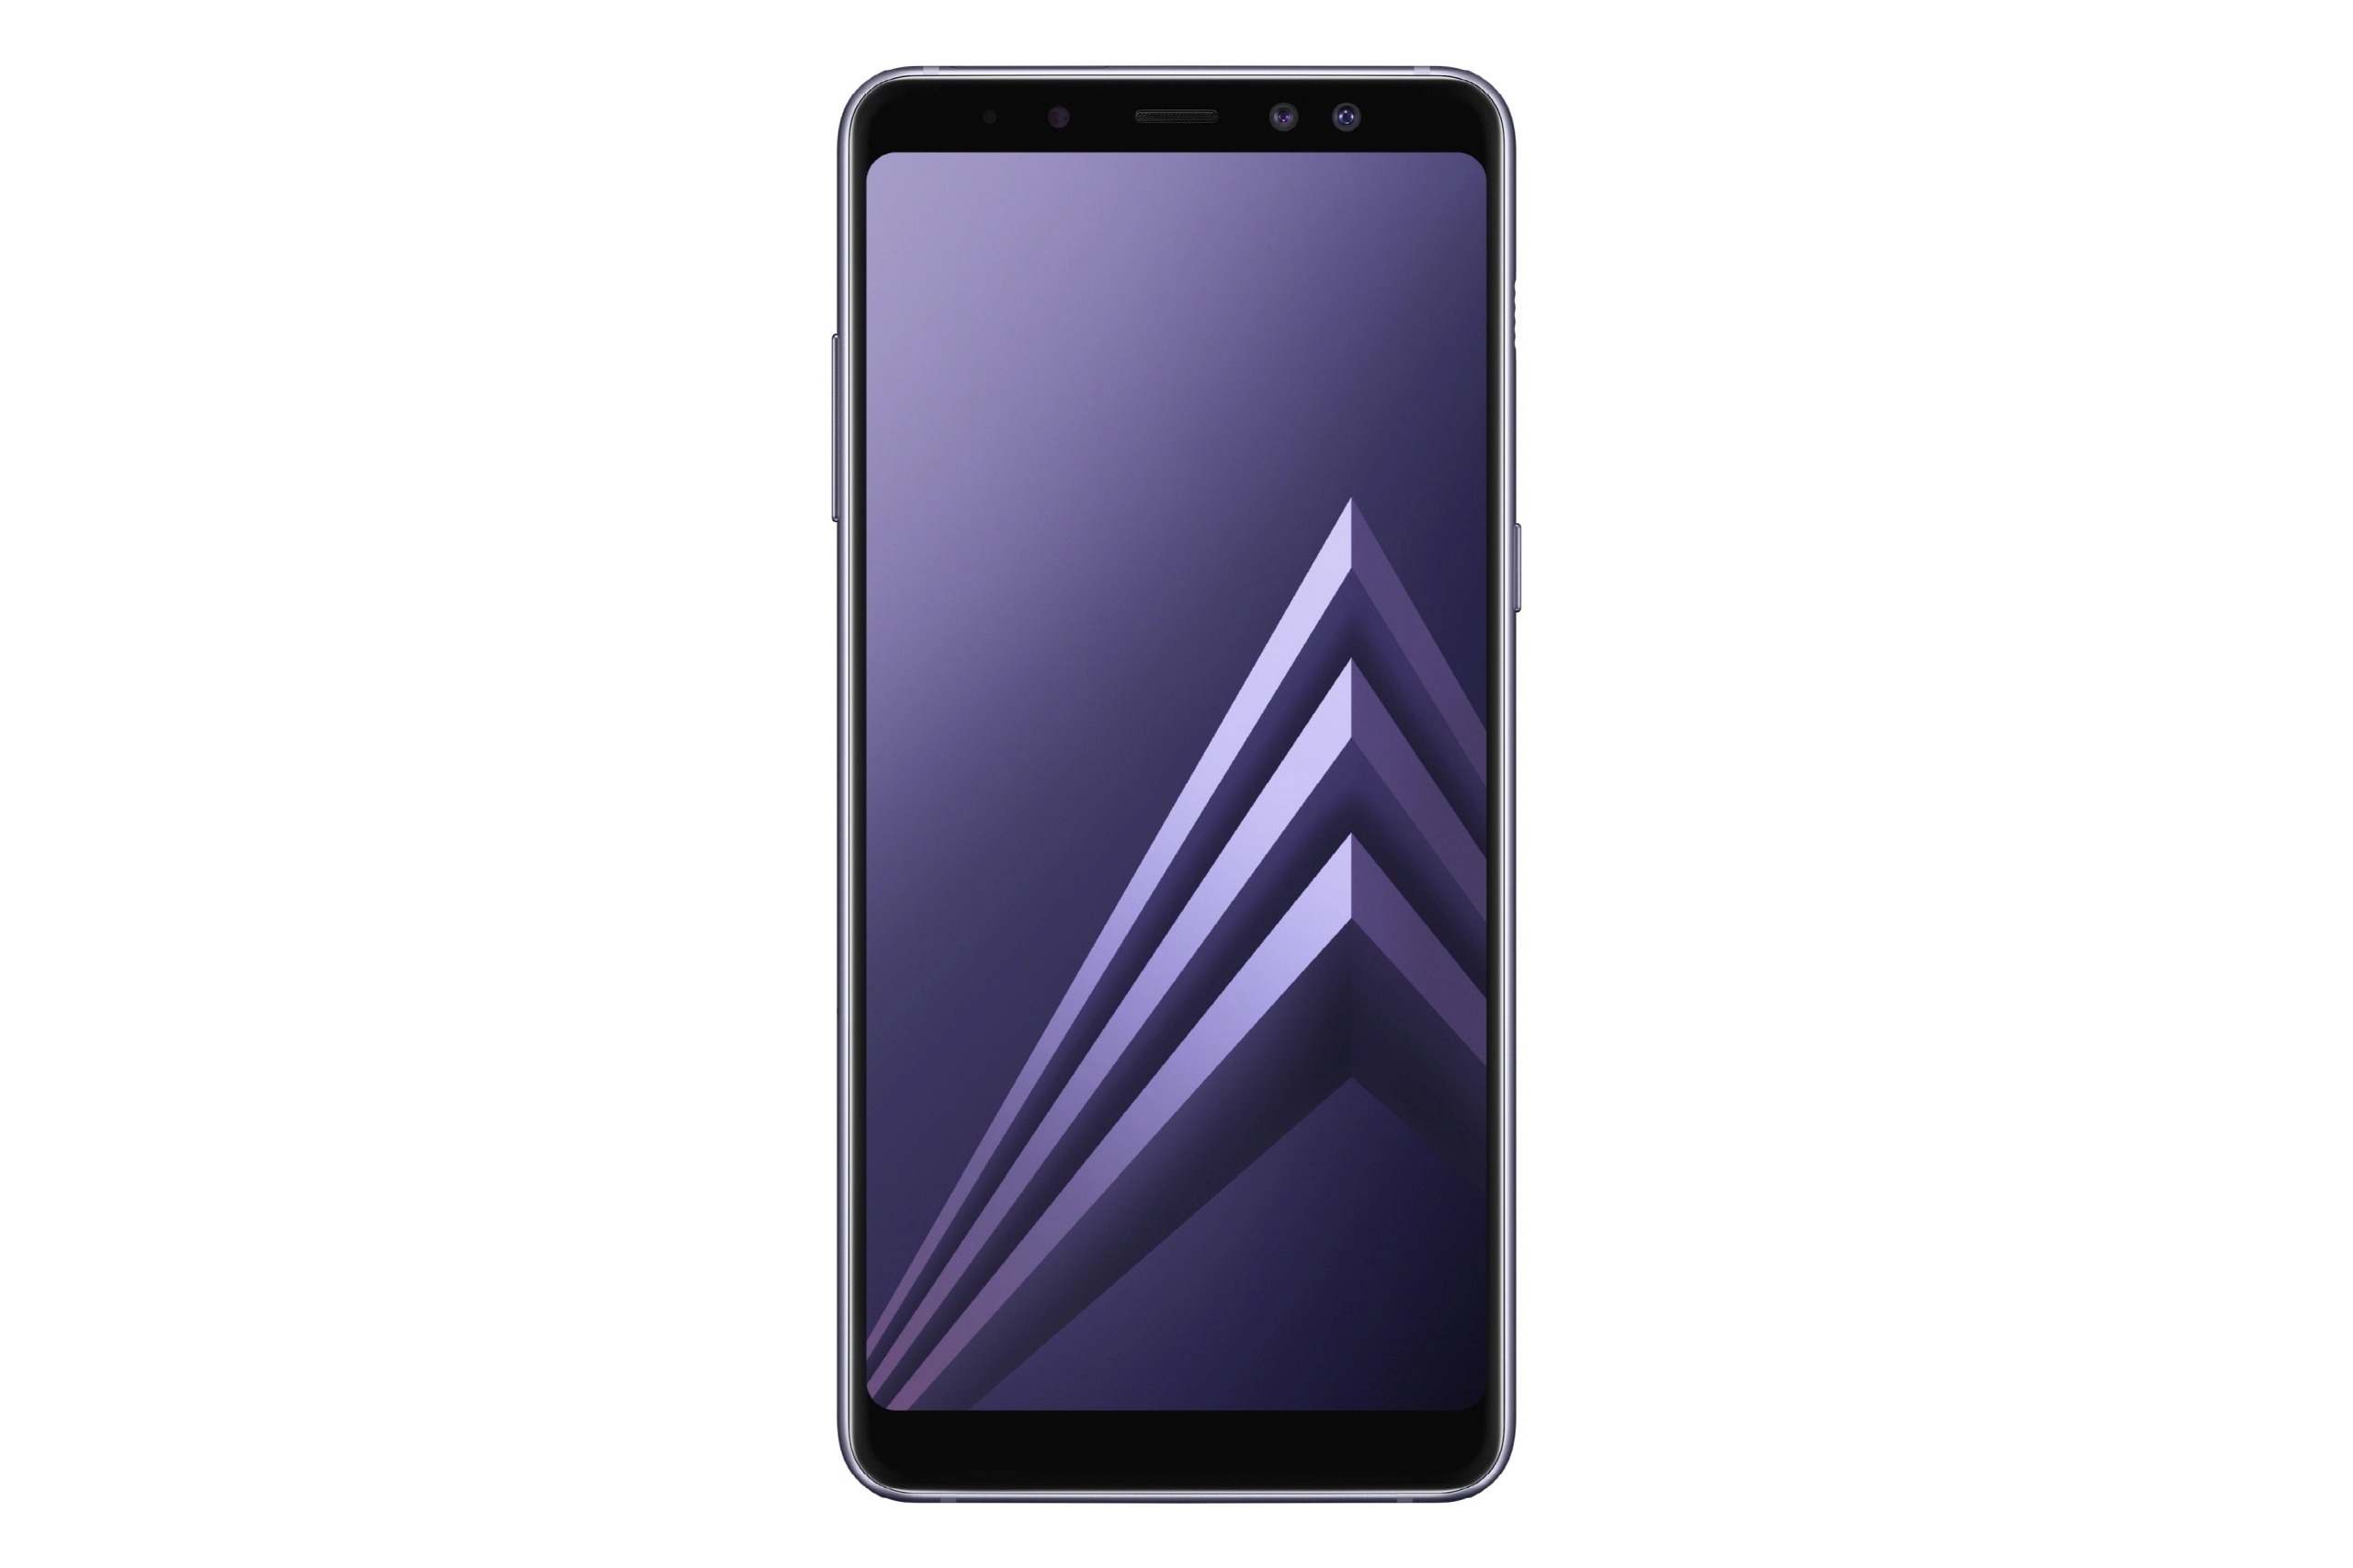 Samsung chính thức
ra mắt
Galaxy A8/A8+ (2018): màn hình tràn cạnh, camera selfie kép
16+8MP